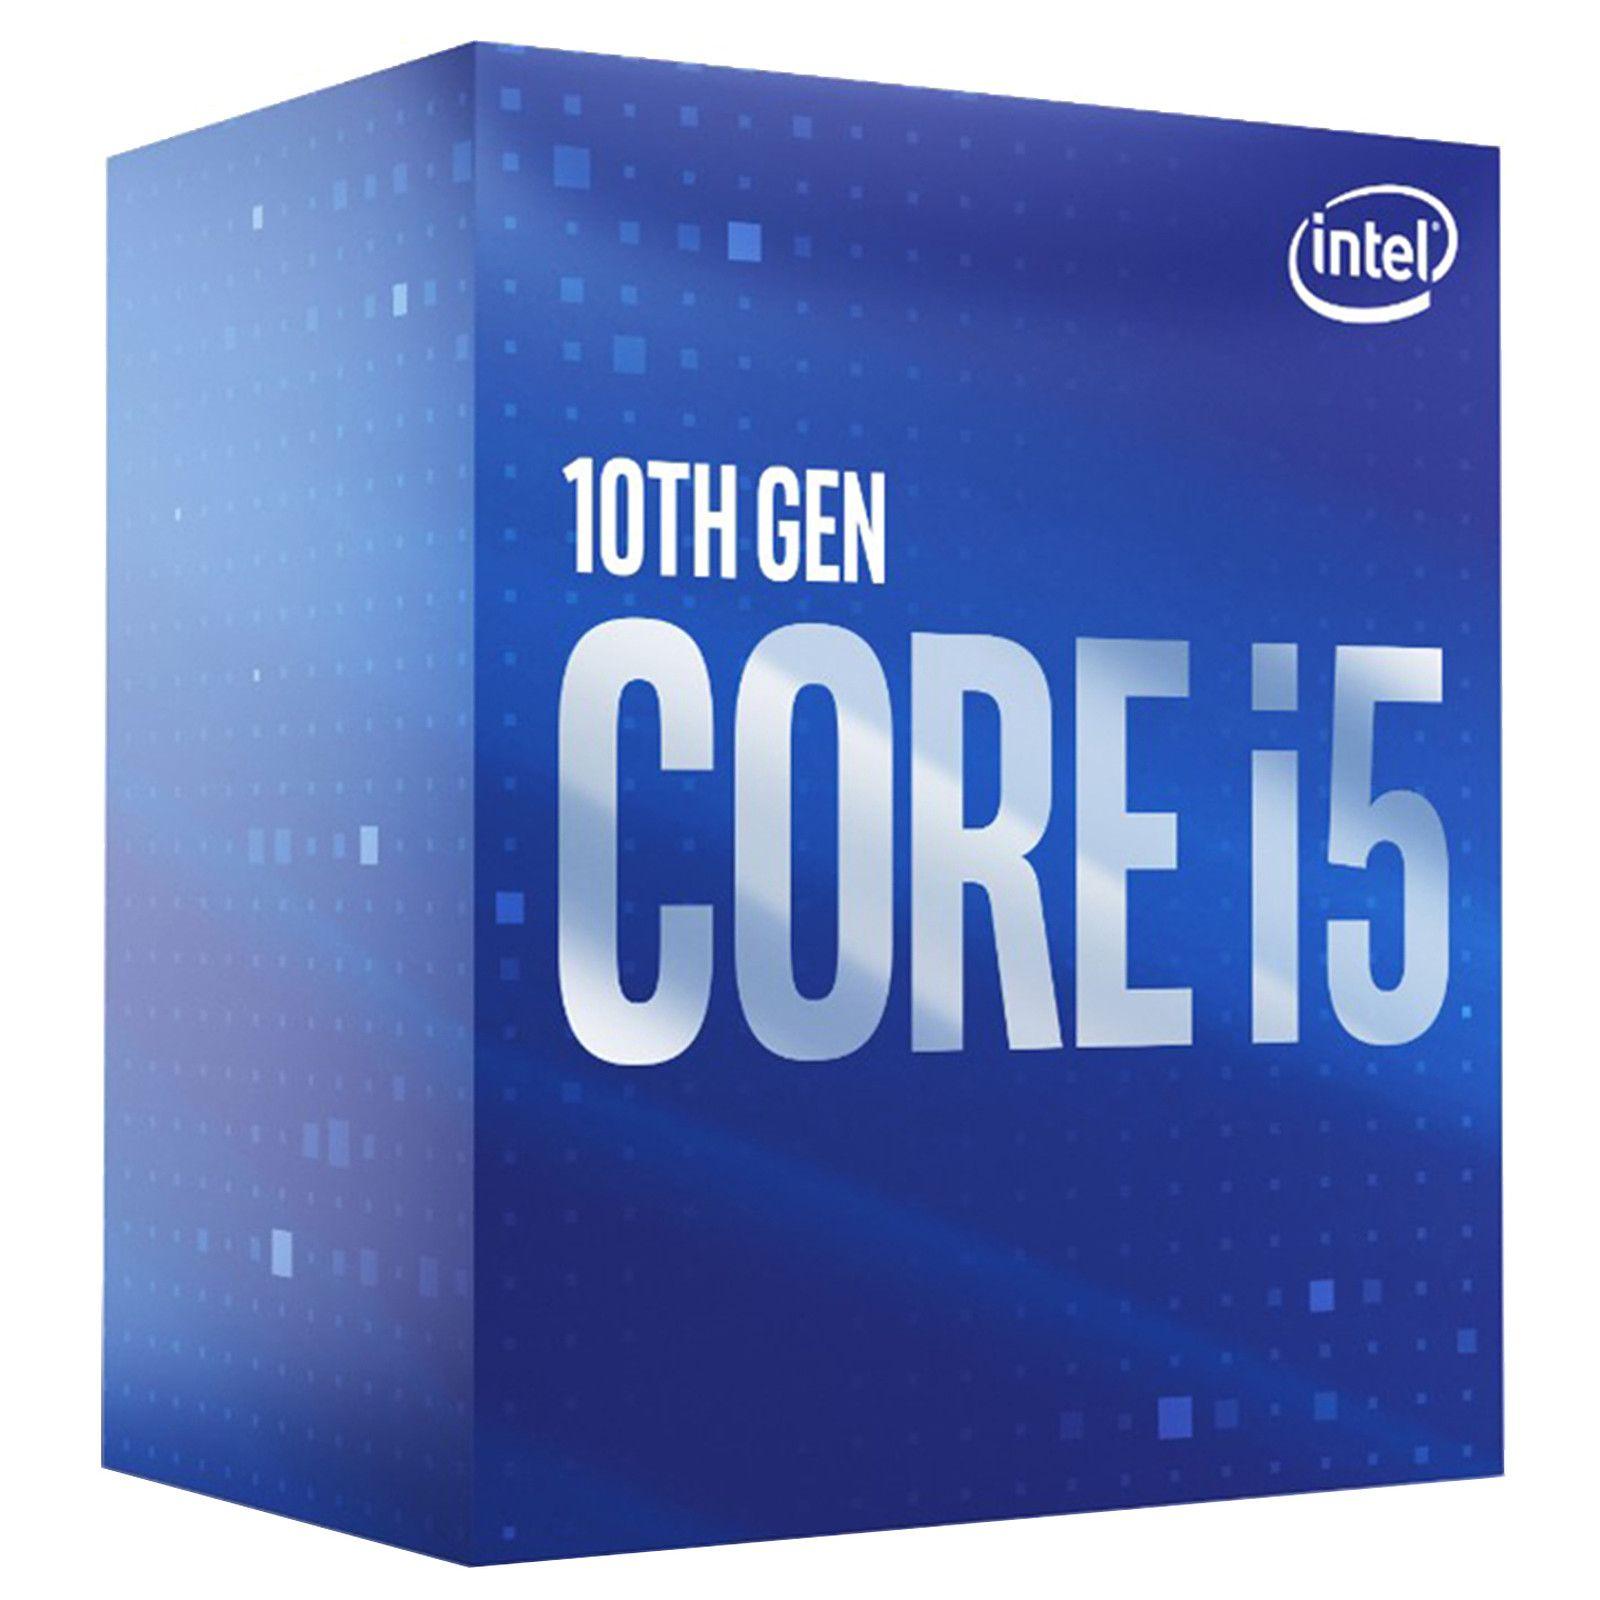 Intel Core i5-10500 Price Nepal